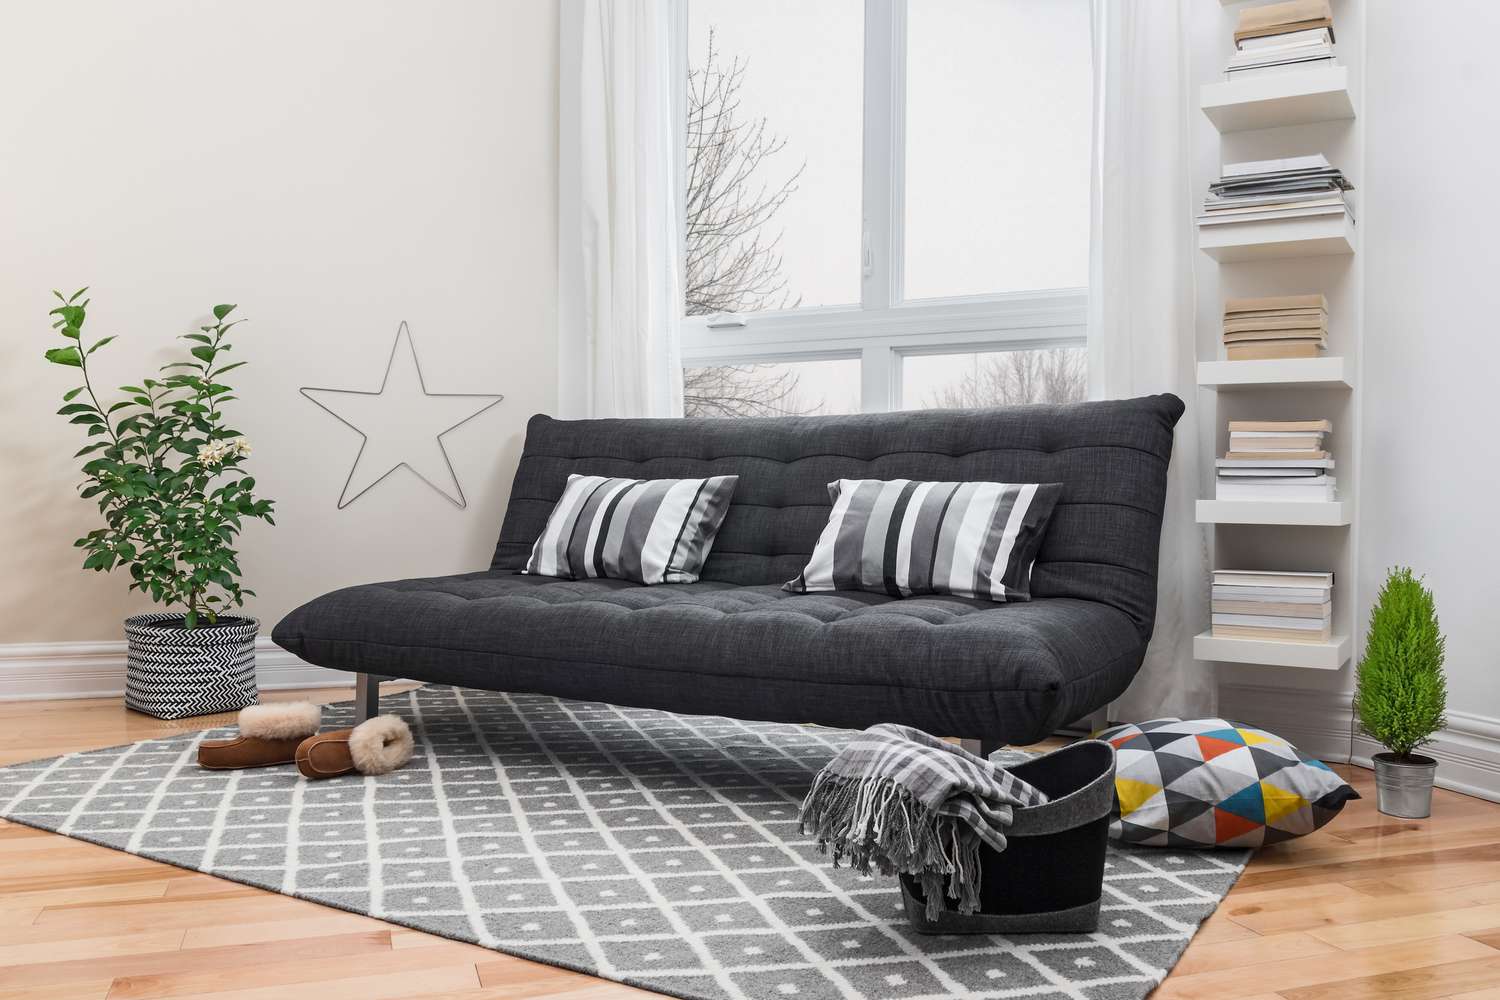 Futón gris con cojines a rayas sobre una alfombra gris junto a una estantería y una planta en el suelo